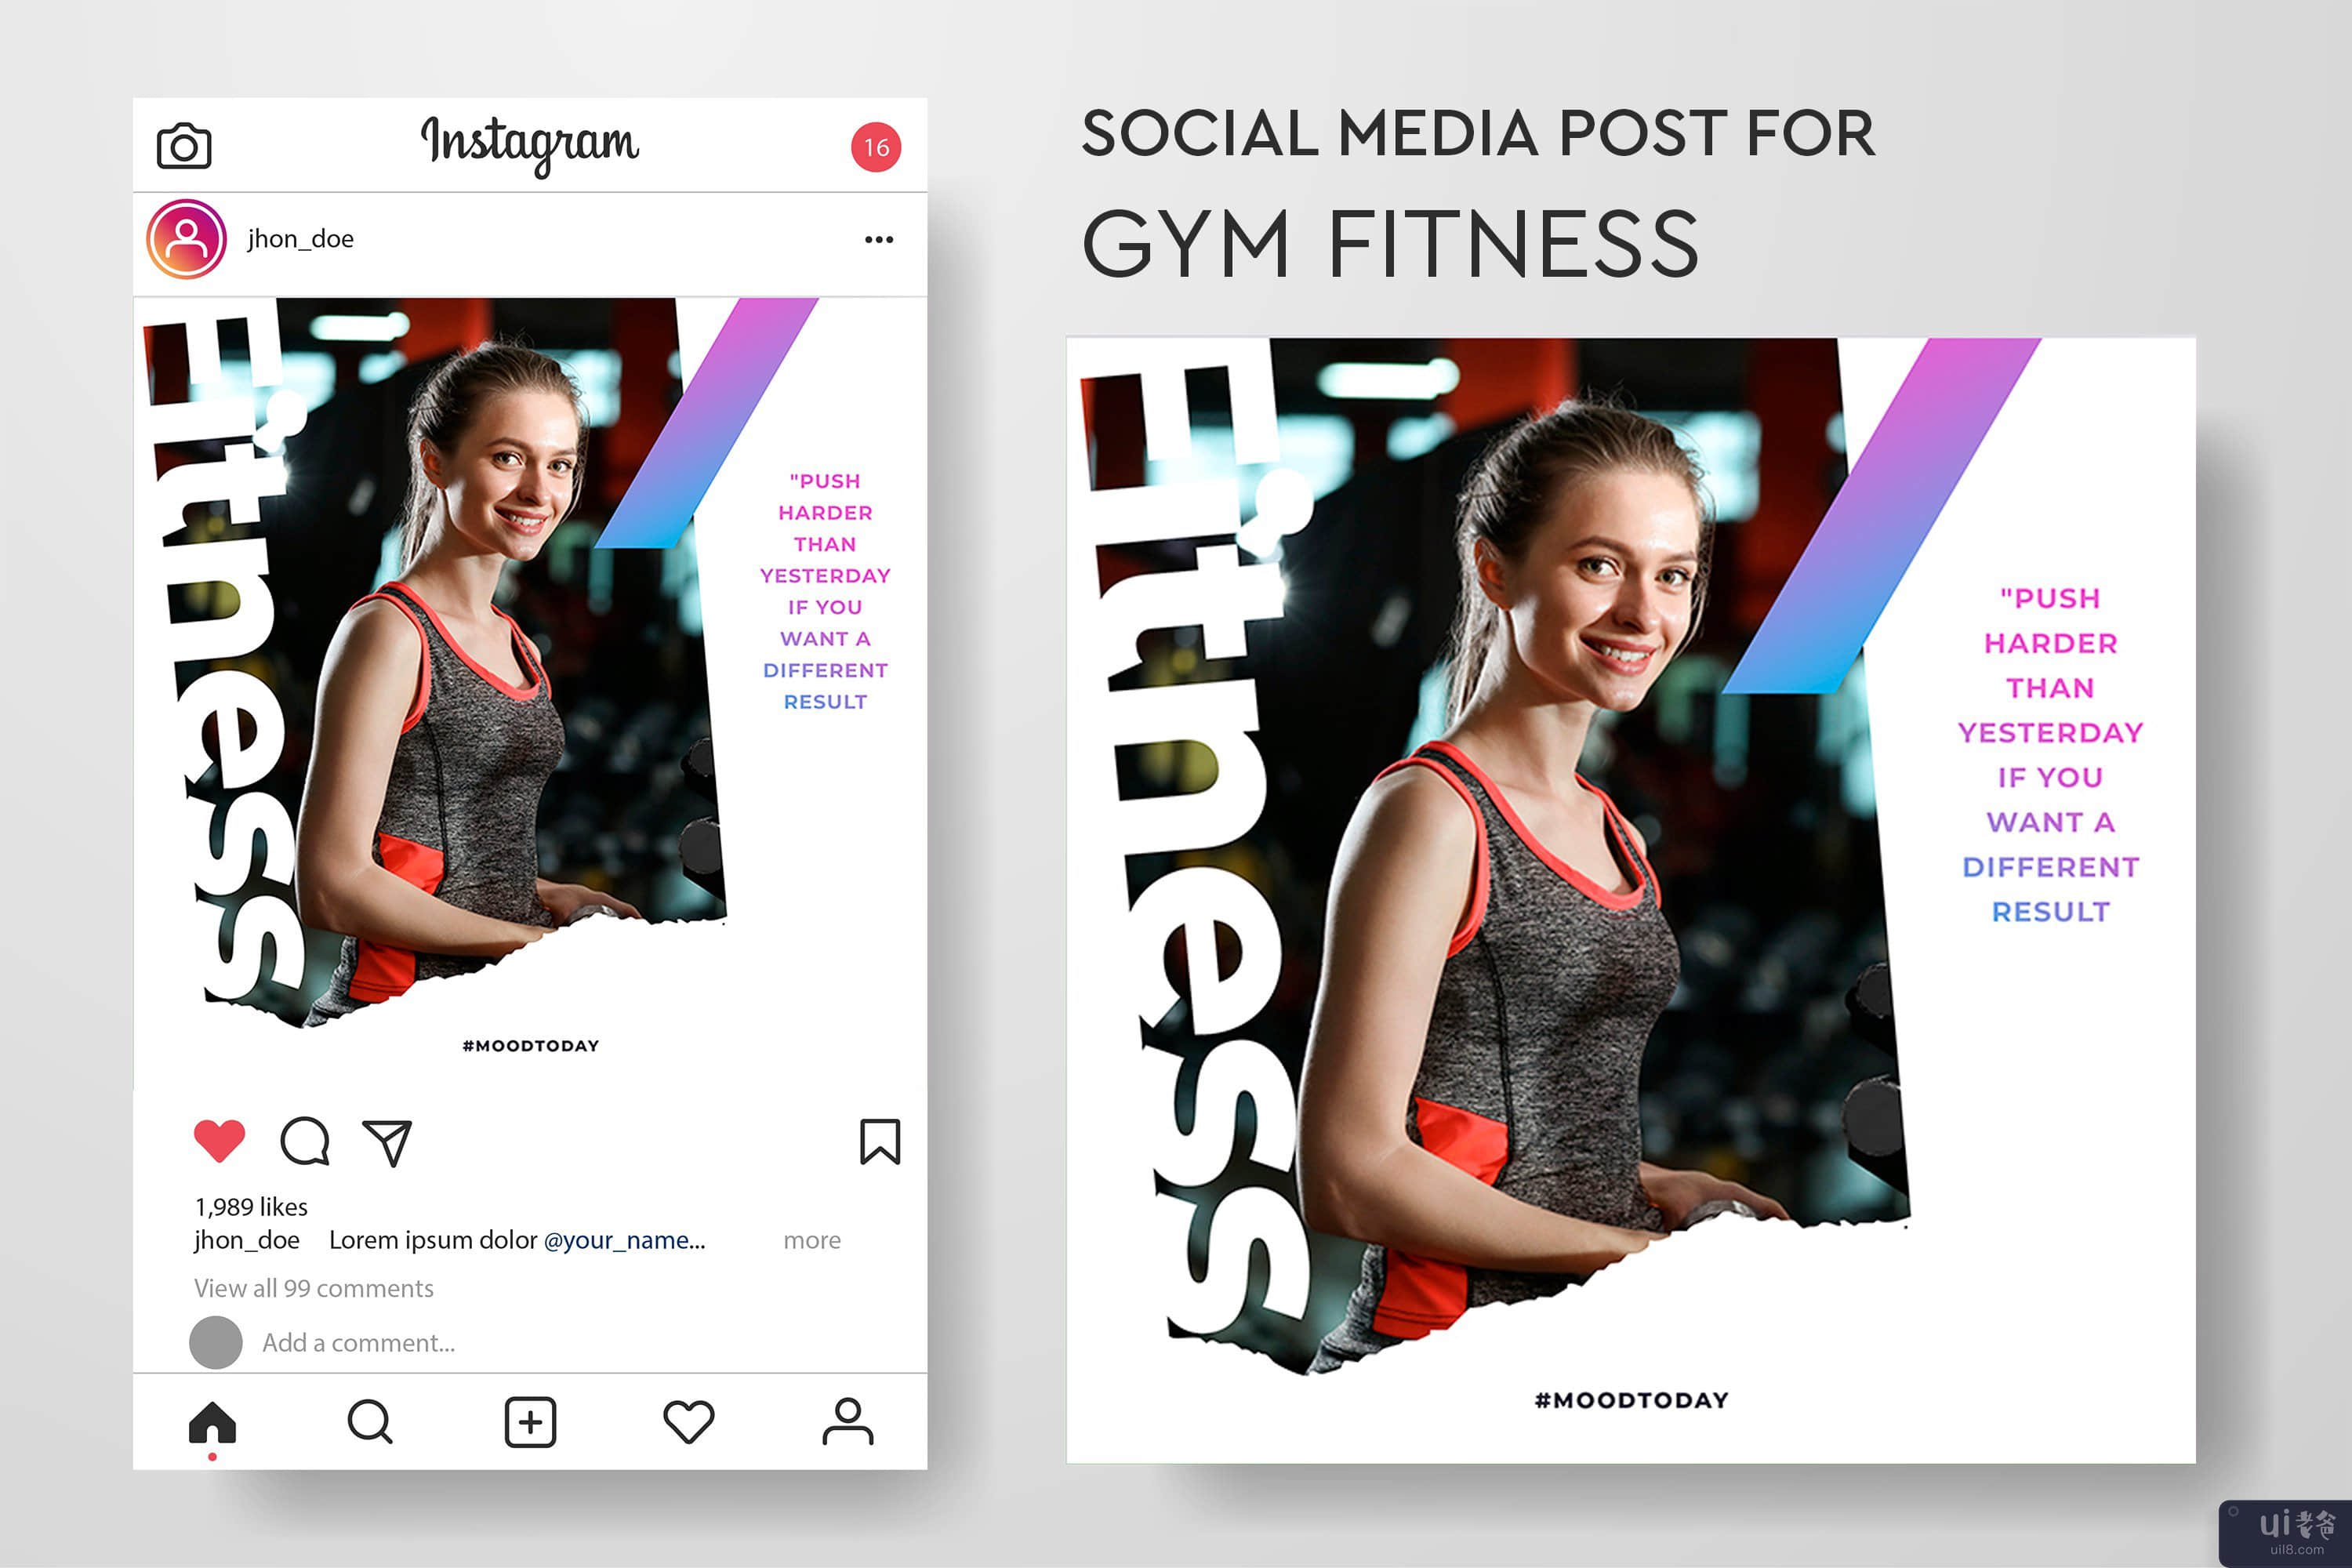 健身房健身社交媒体帖子模板集合(Gym fitness social media post templates collection)插图